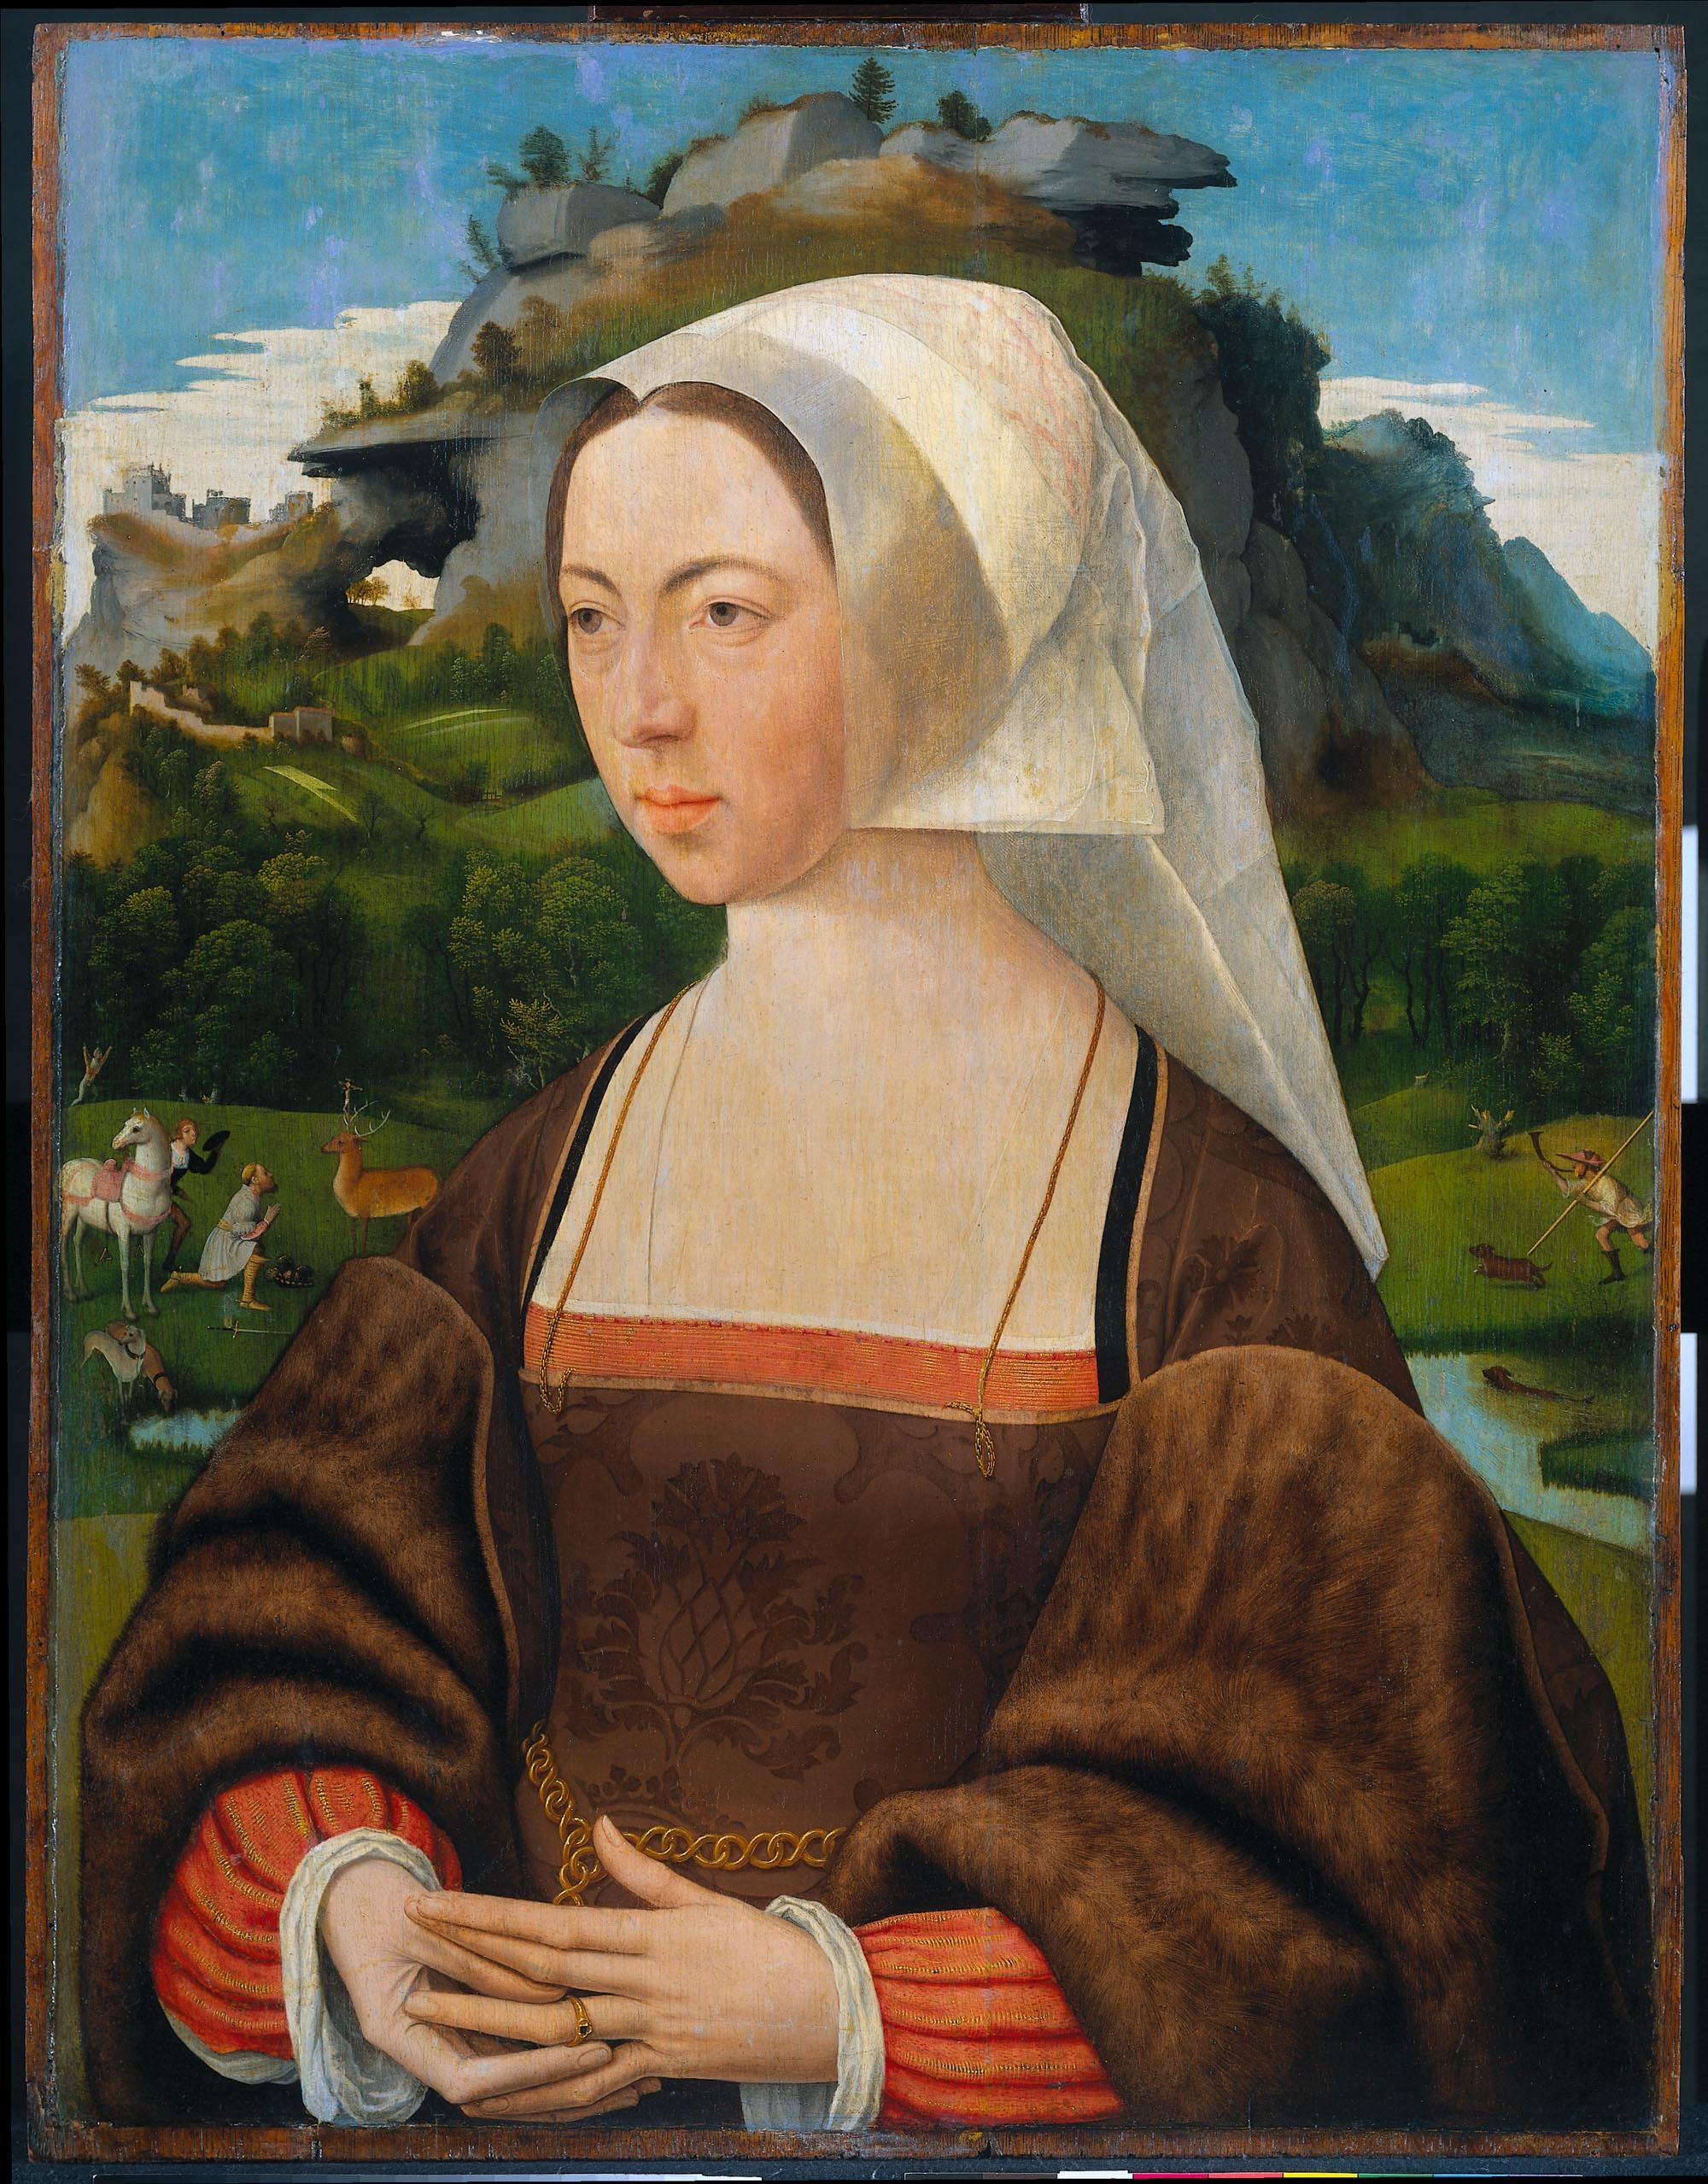 1530 - Portrait of a woman